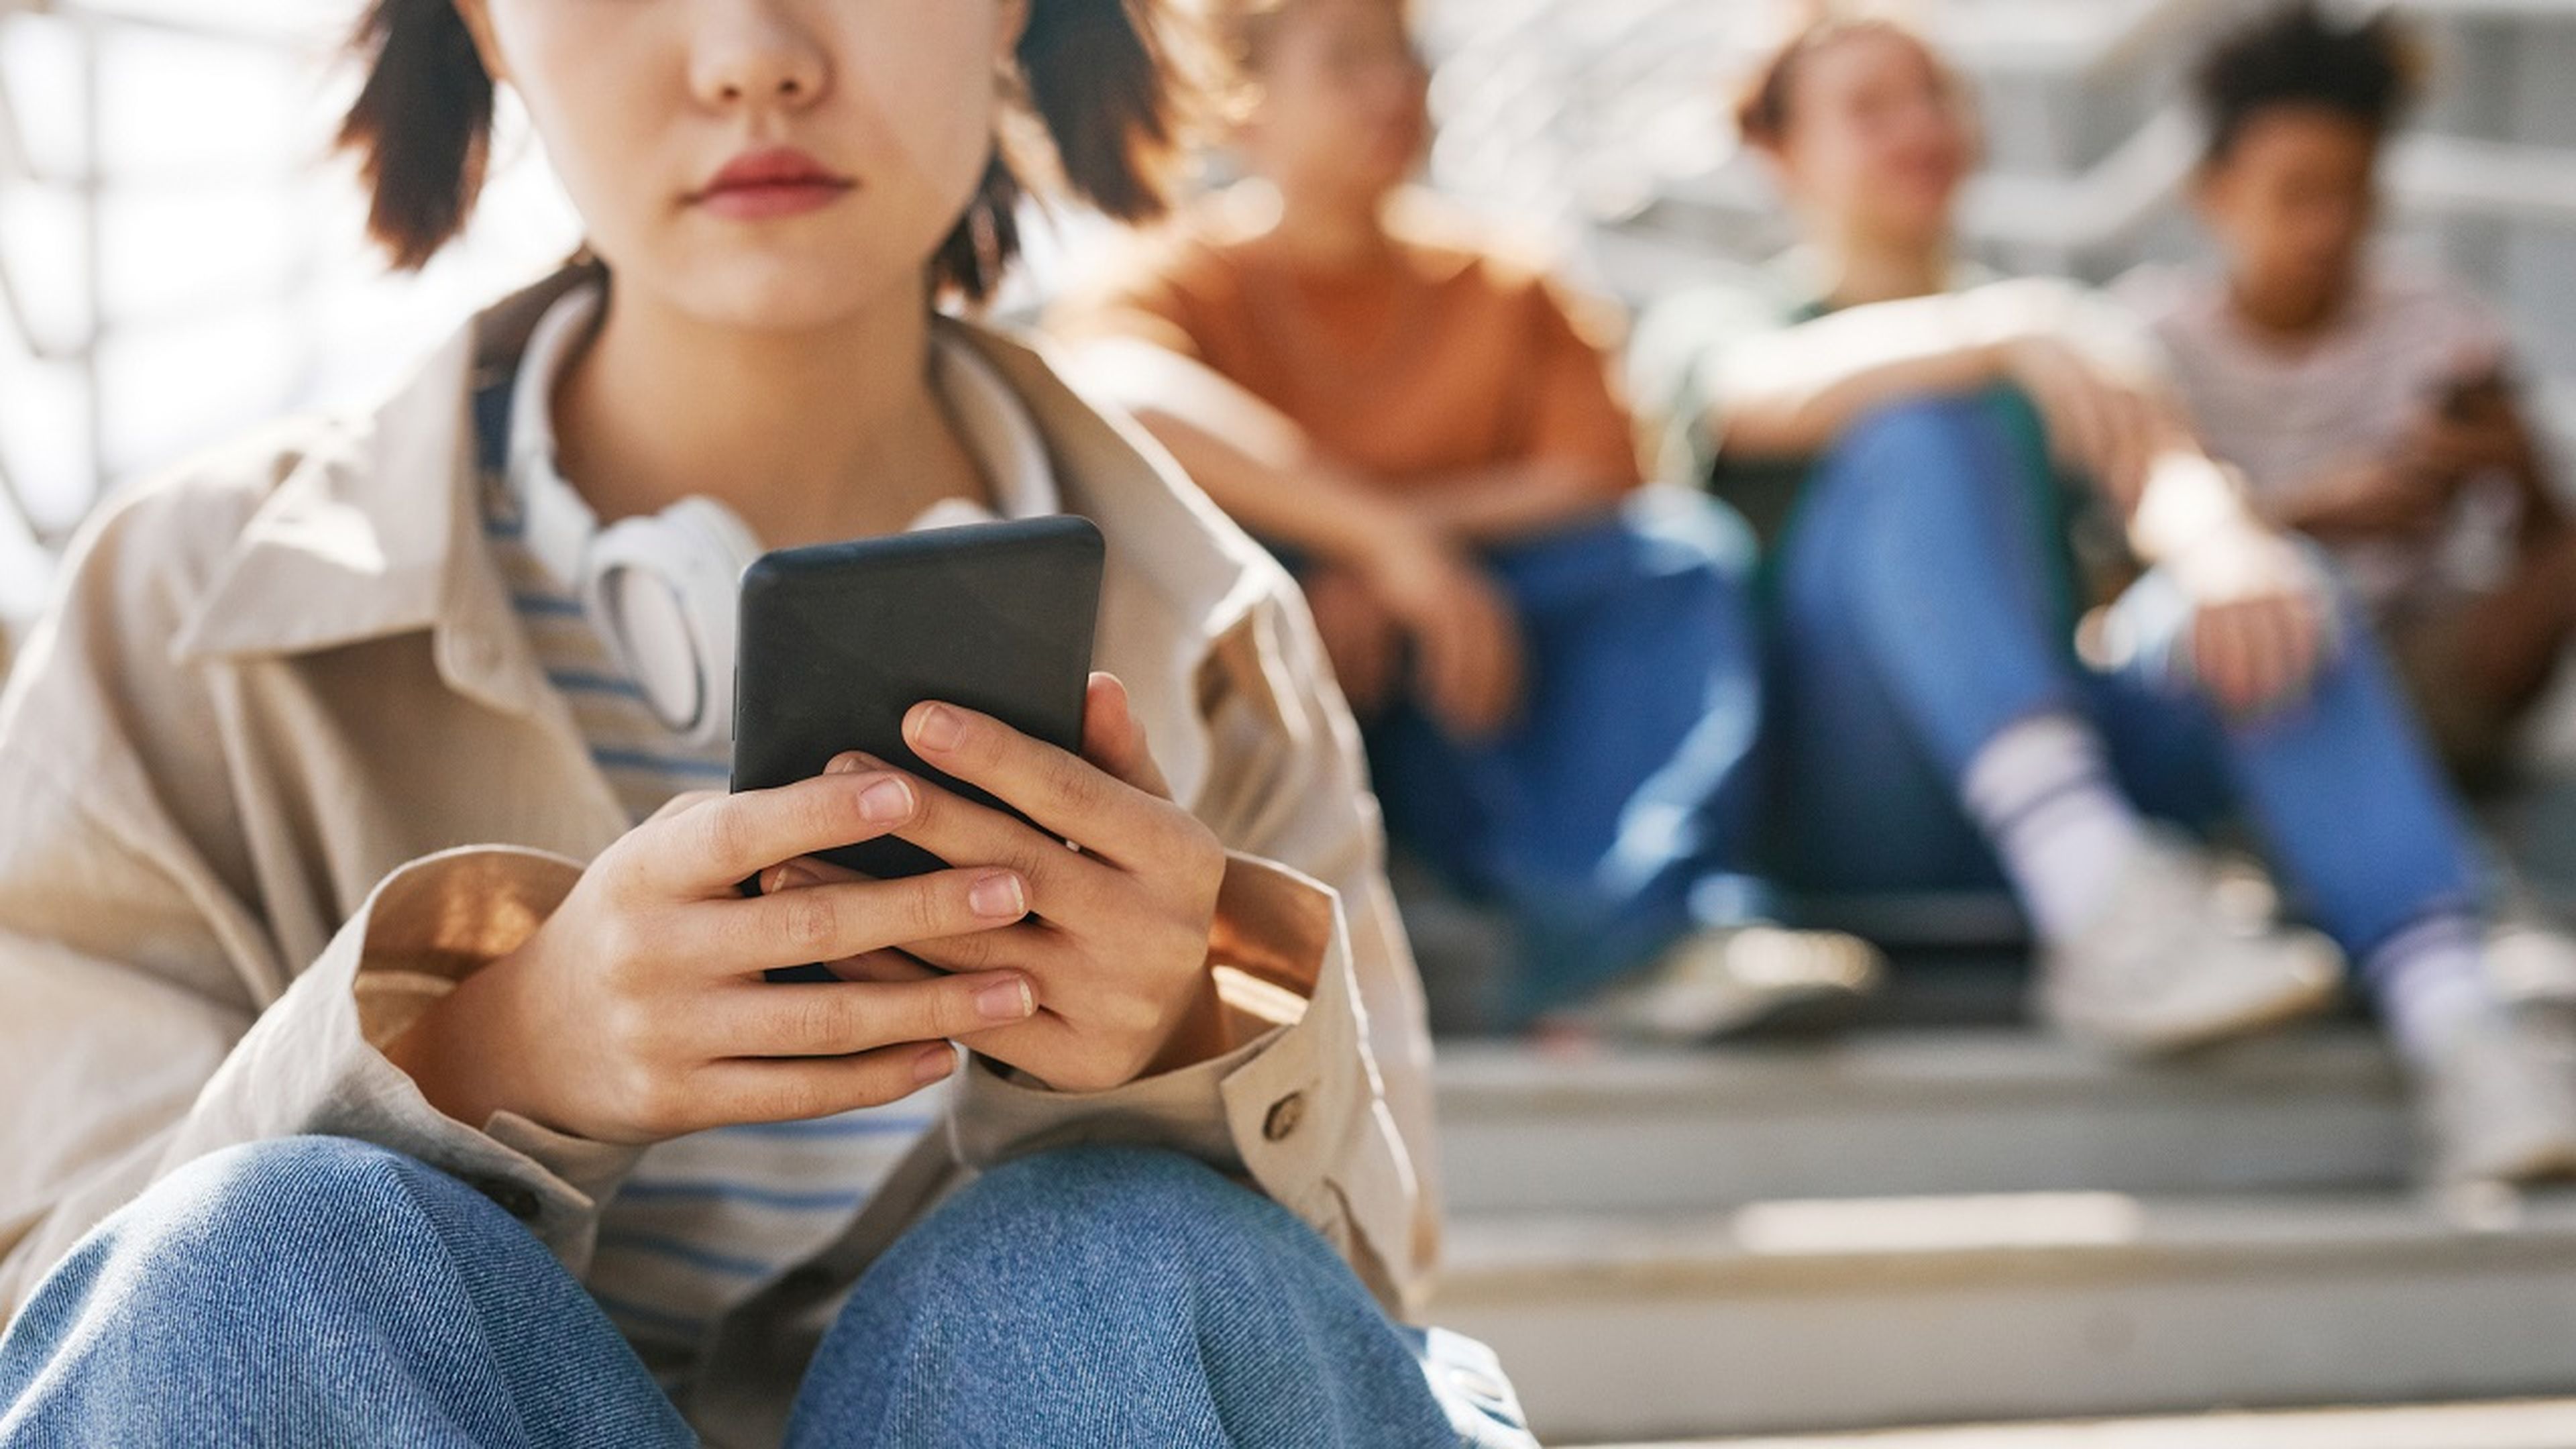 El problema asociado a los teléfonos móviles que afecta a la salud mental de los jóvenes, según un estudio